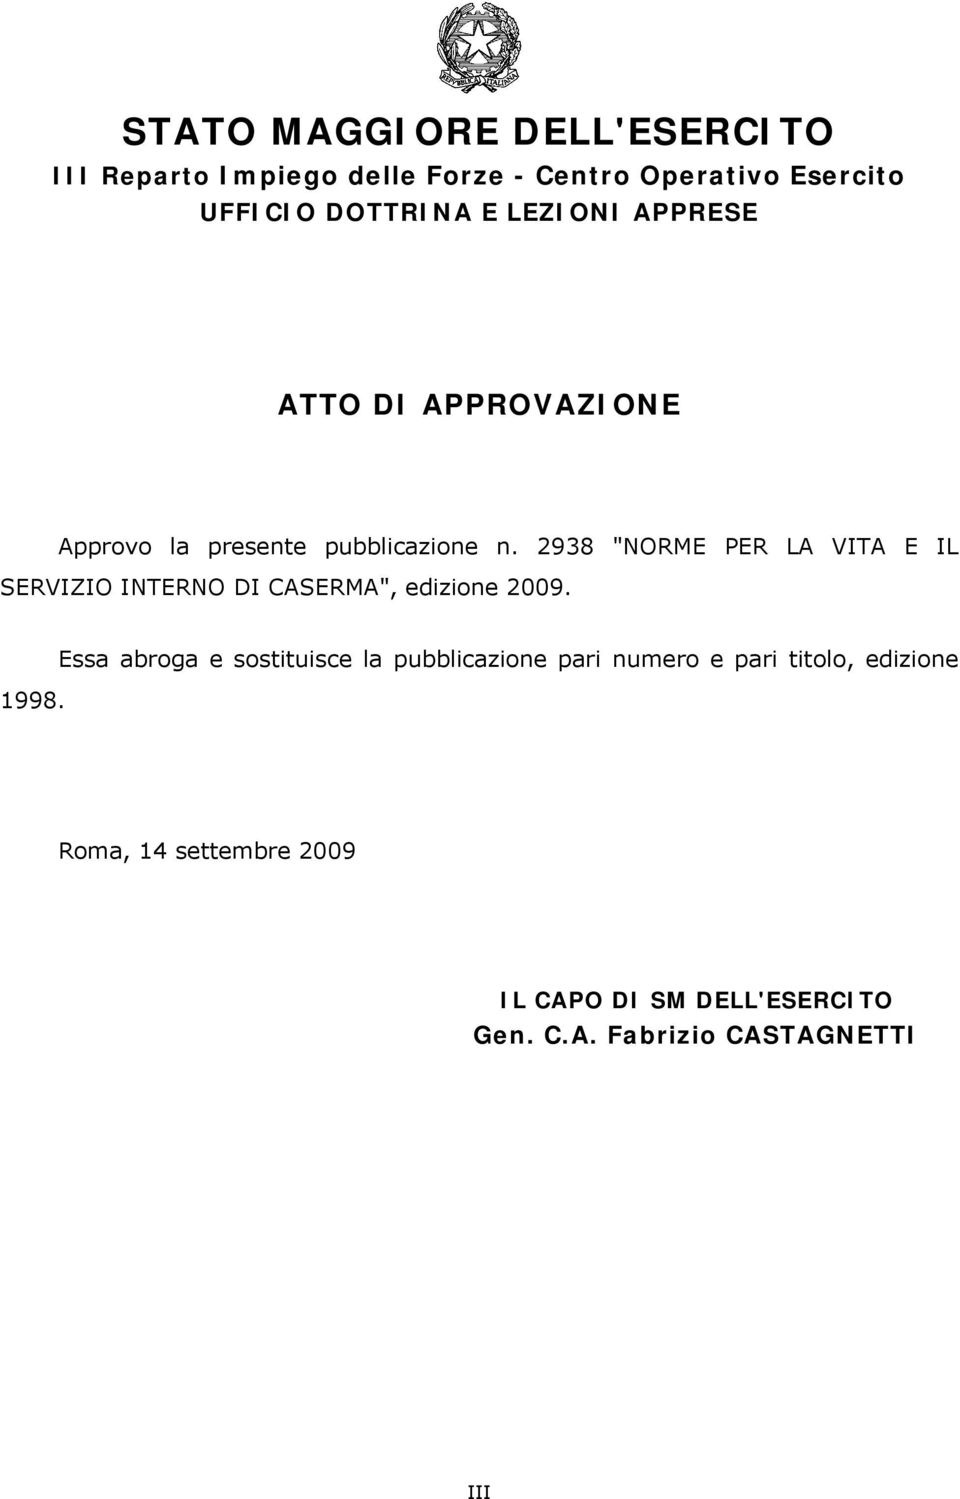 2938 "NORME PER LA VITA E IL SERVIZIO INTERNO DI CASERMA", edizione 2009. 1998.